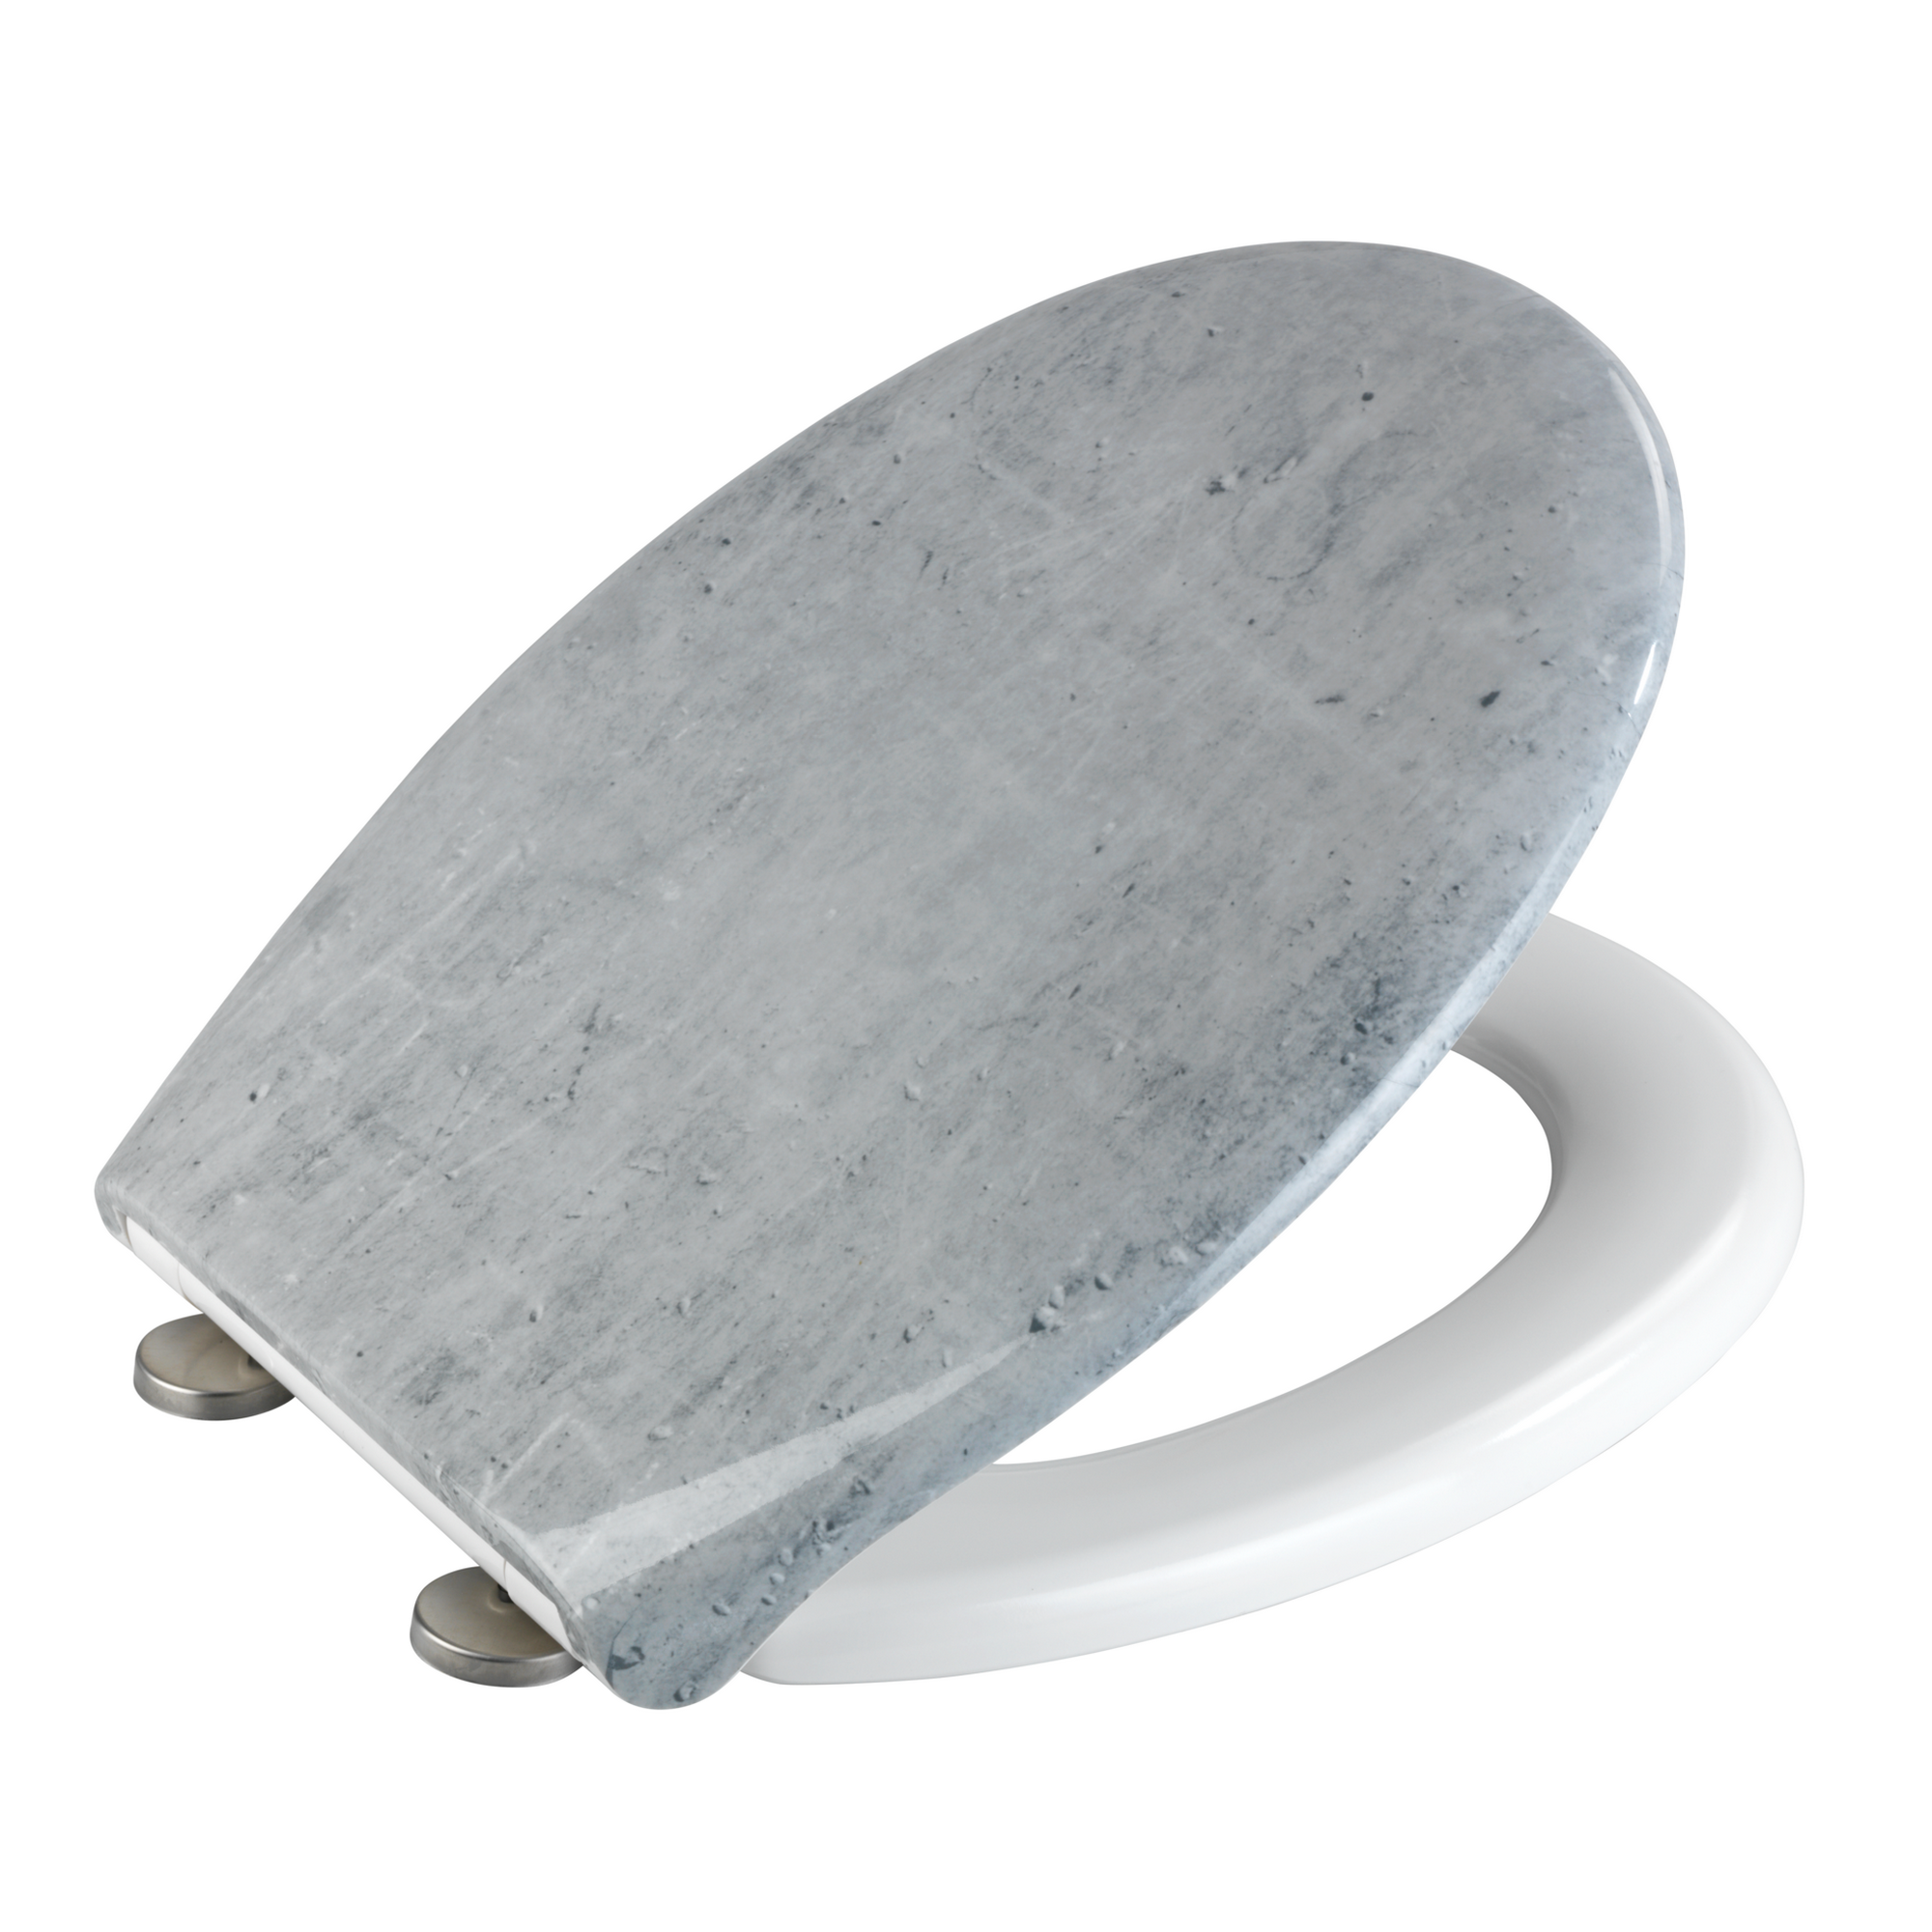 WC-Sitz 'Concrete' Duroplast grau, Absenkautomatik 44,5 x 37 cm + product picture